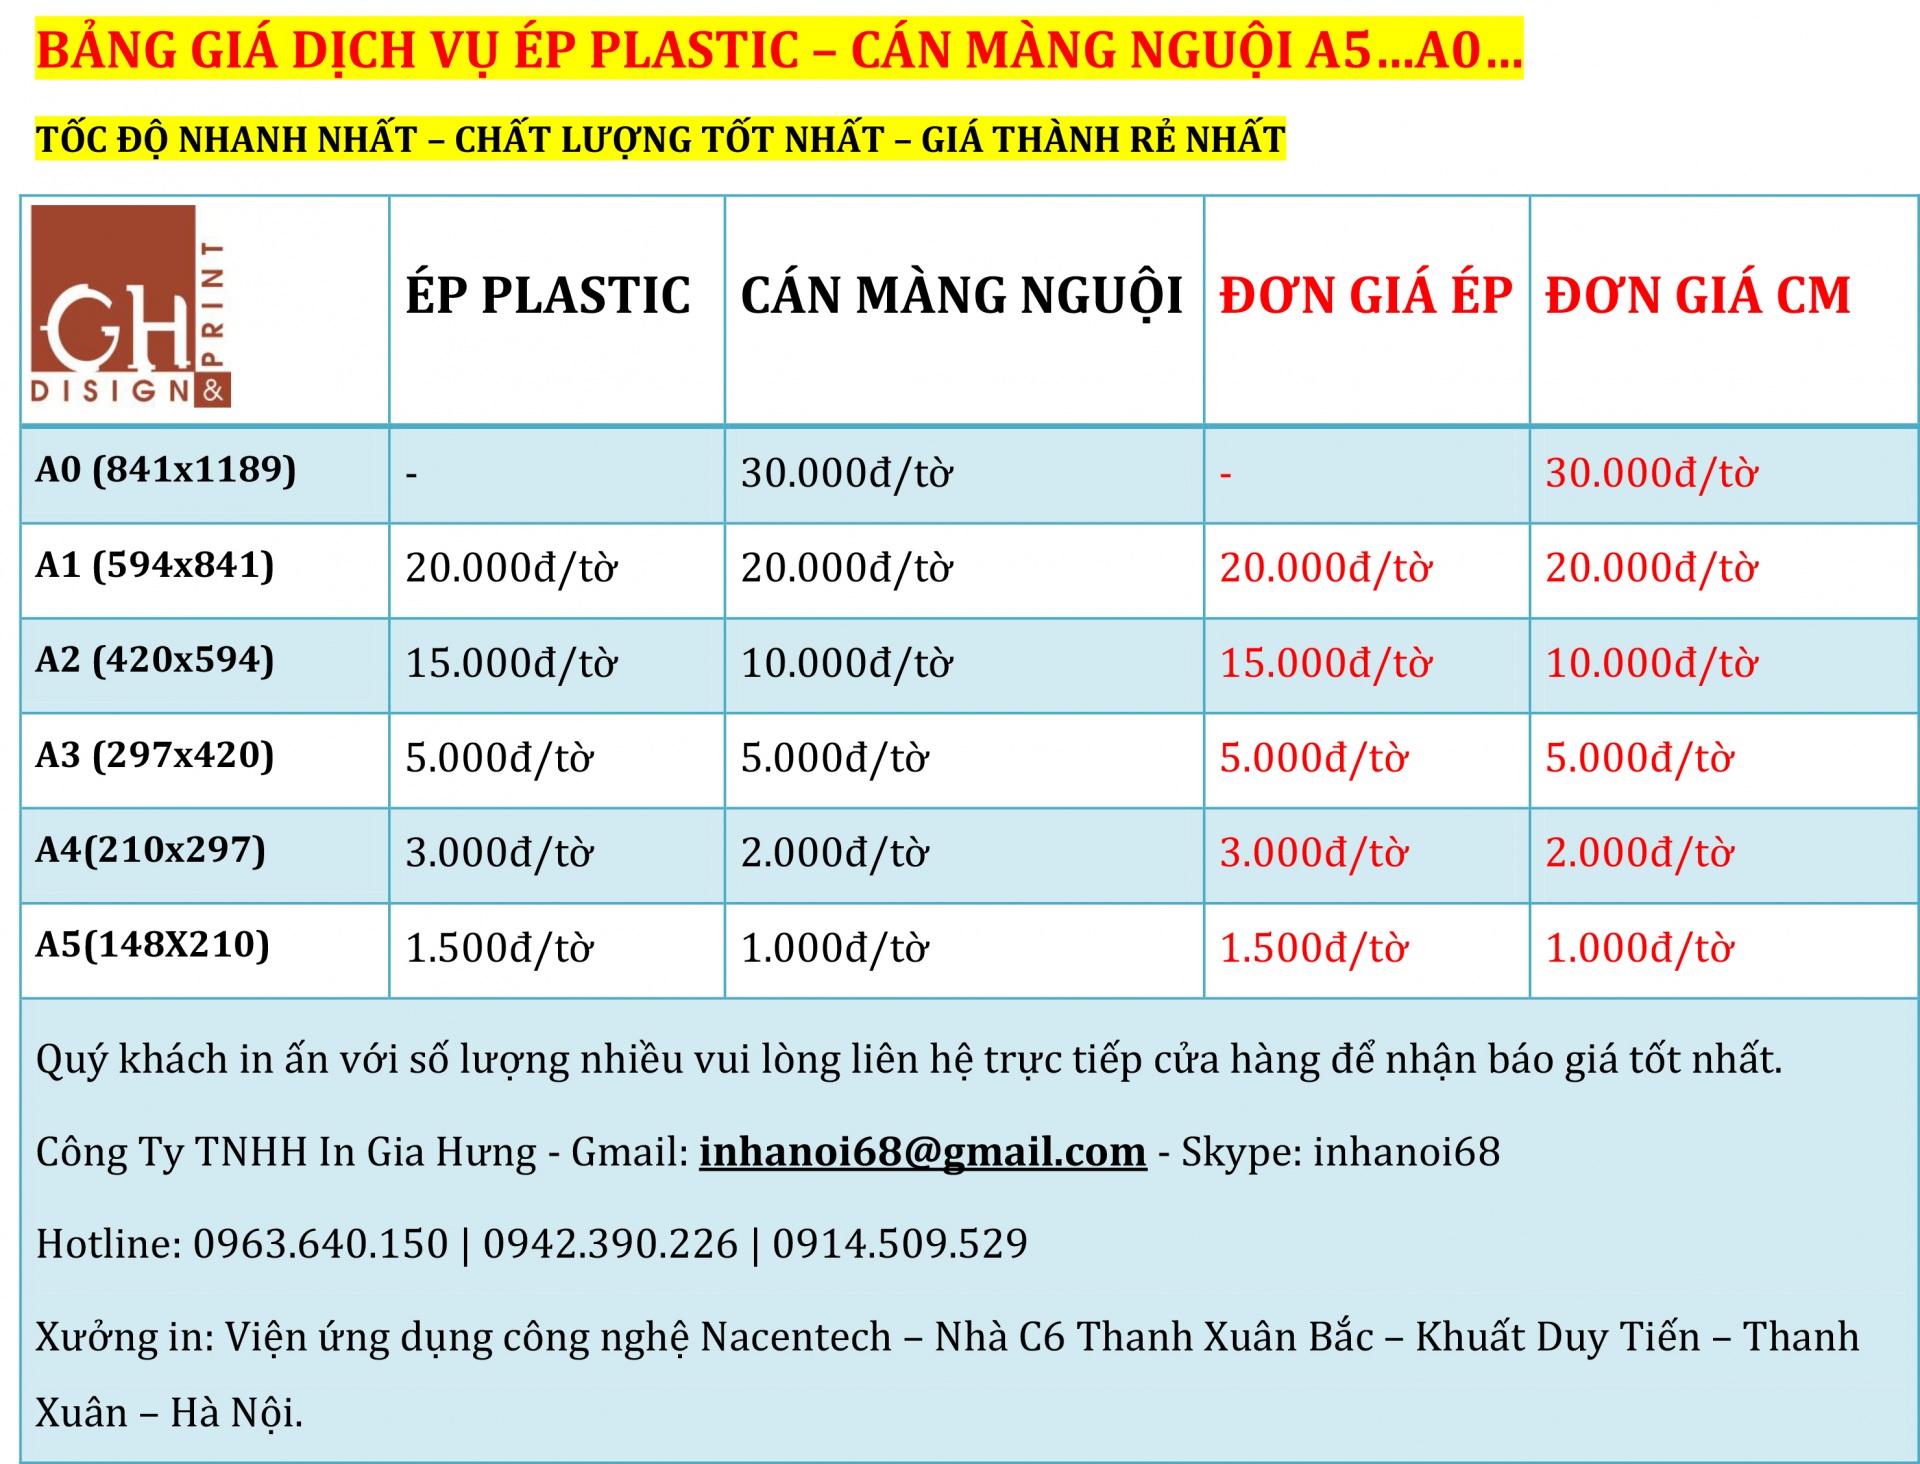 Dịch vụ Ép plastic khổ A4 giá rẻ nhất ở tại Hà Nội.